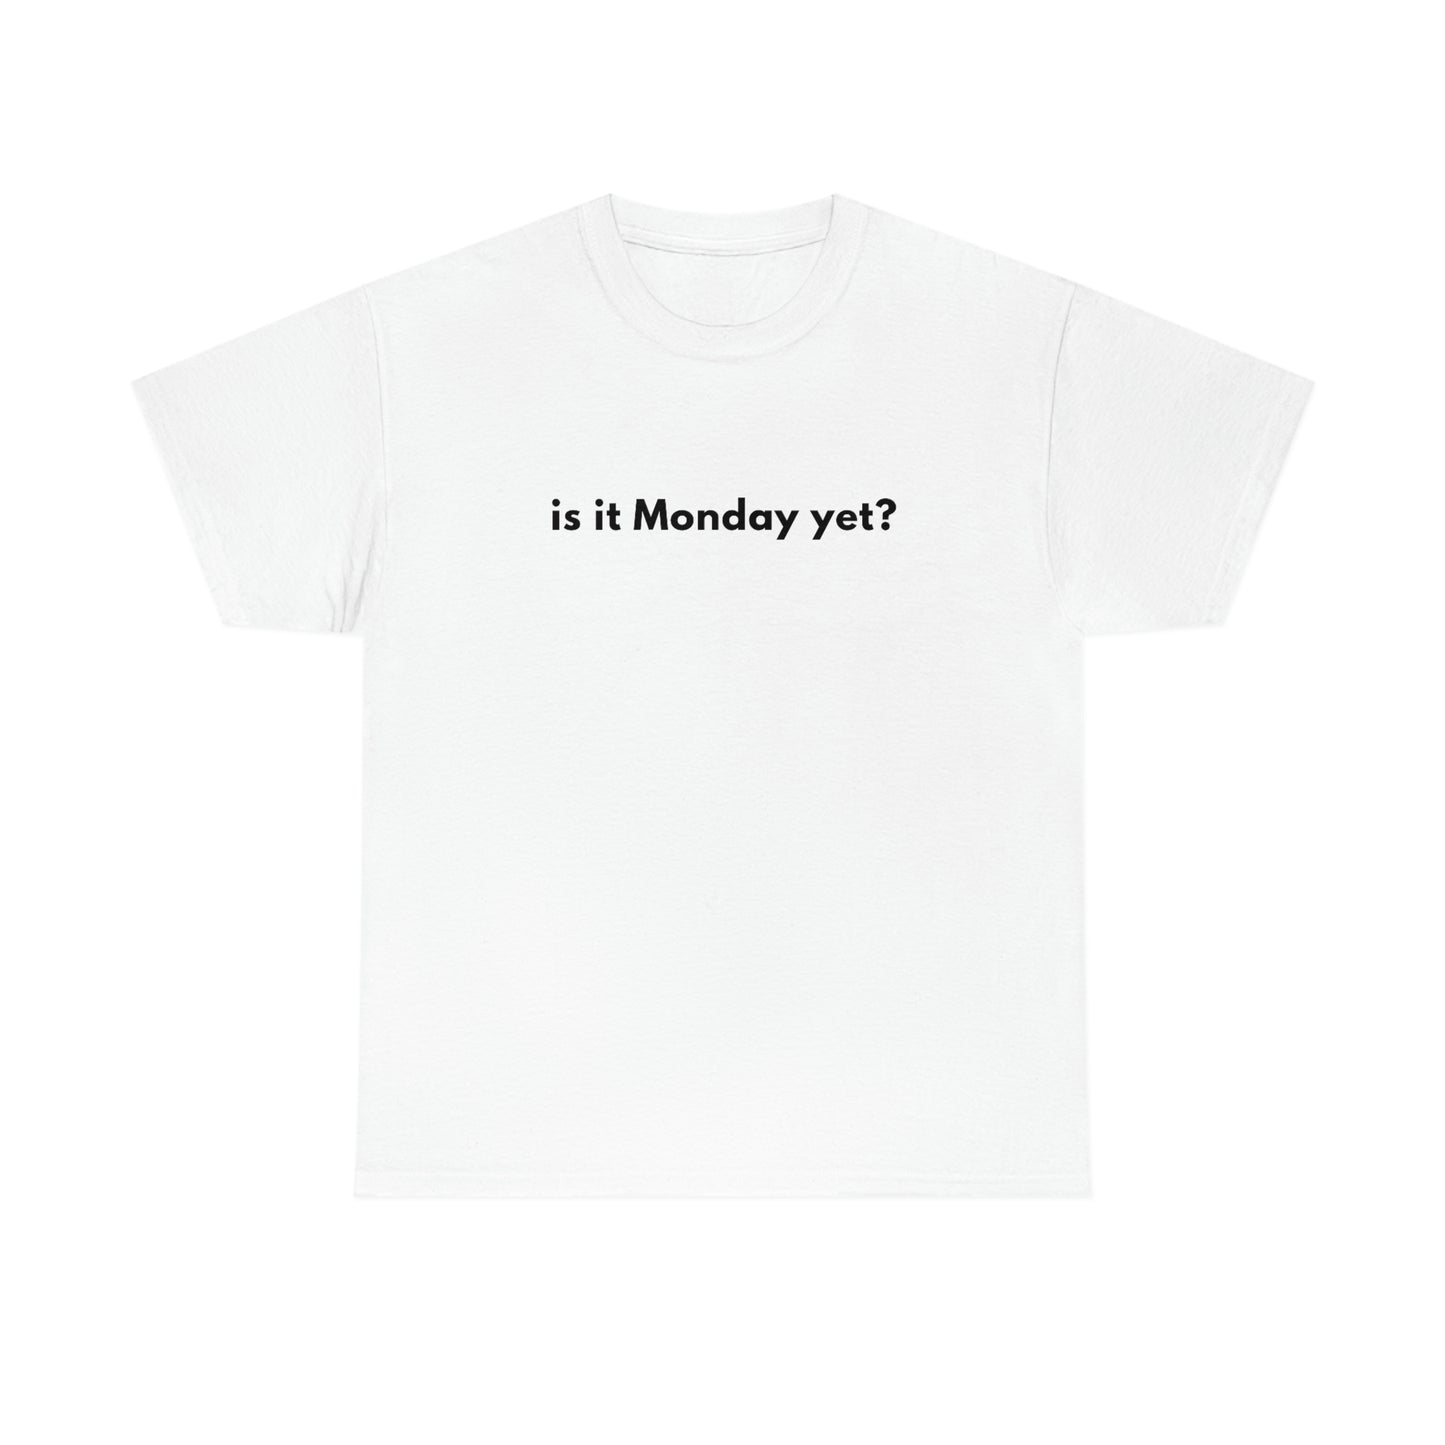 Is It Monday Yet?